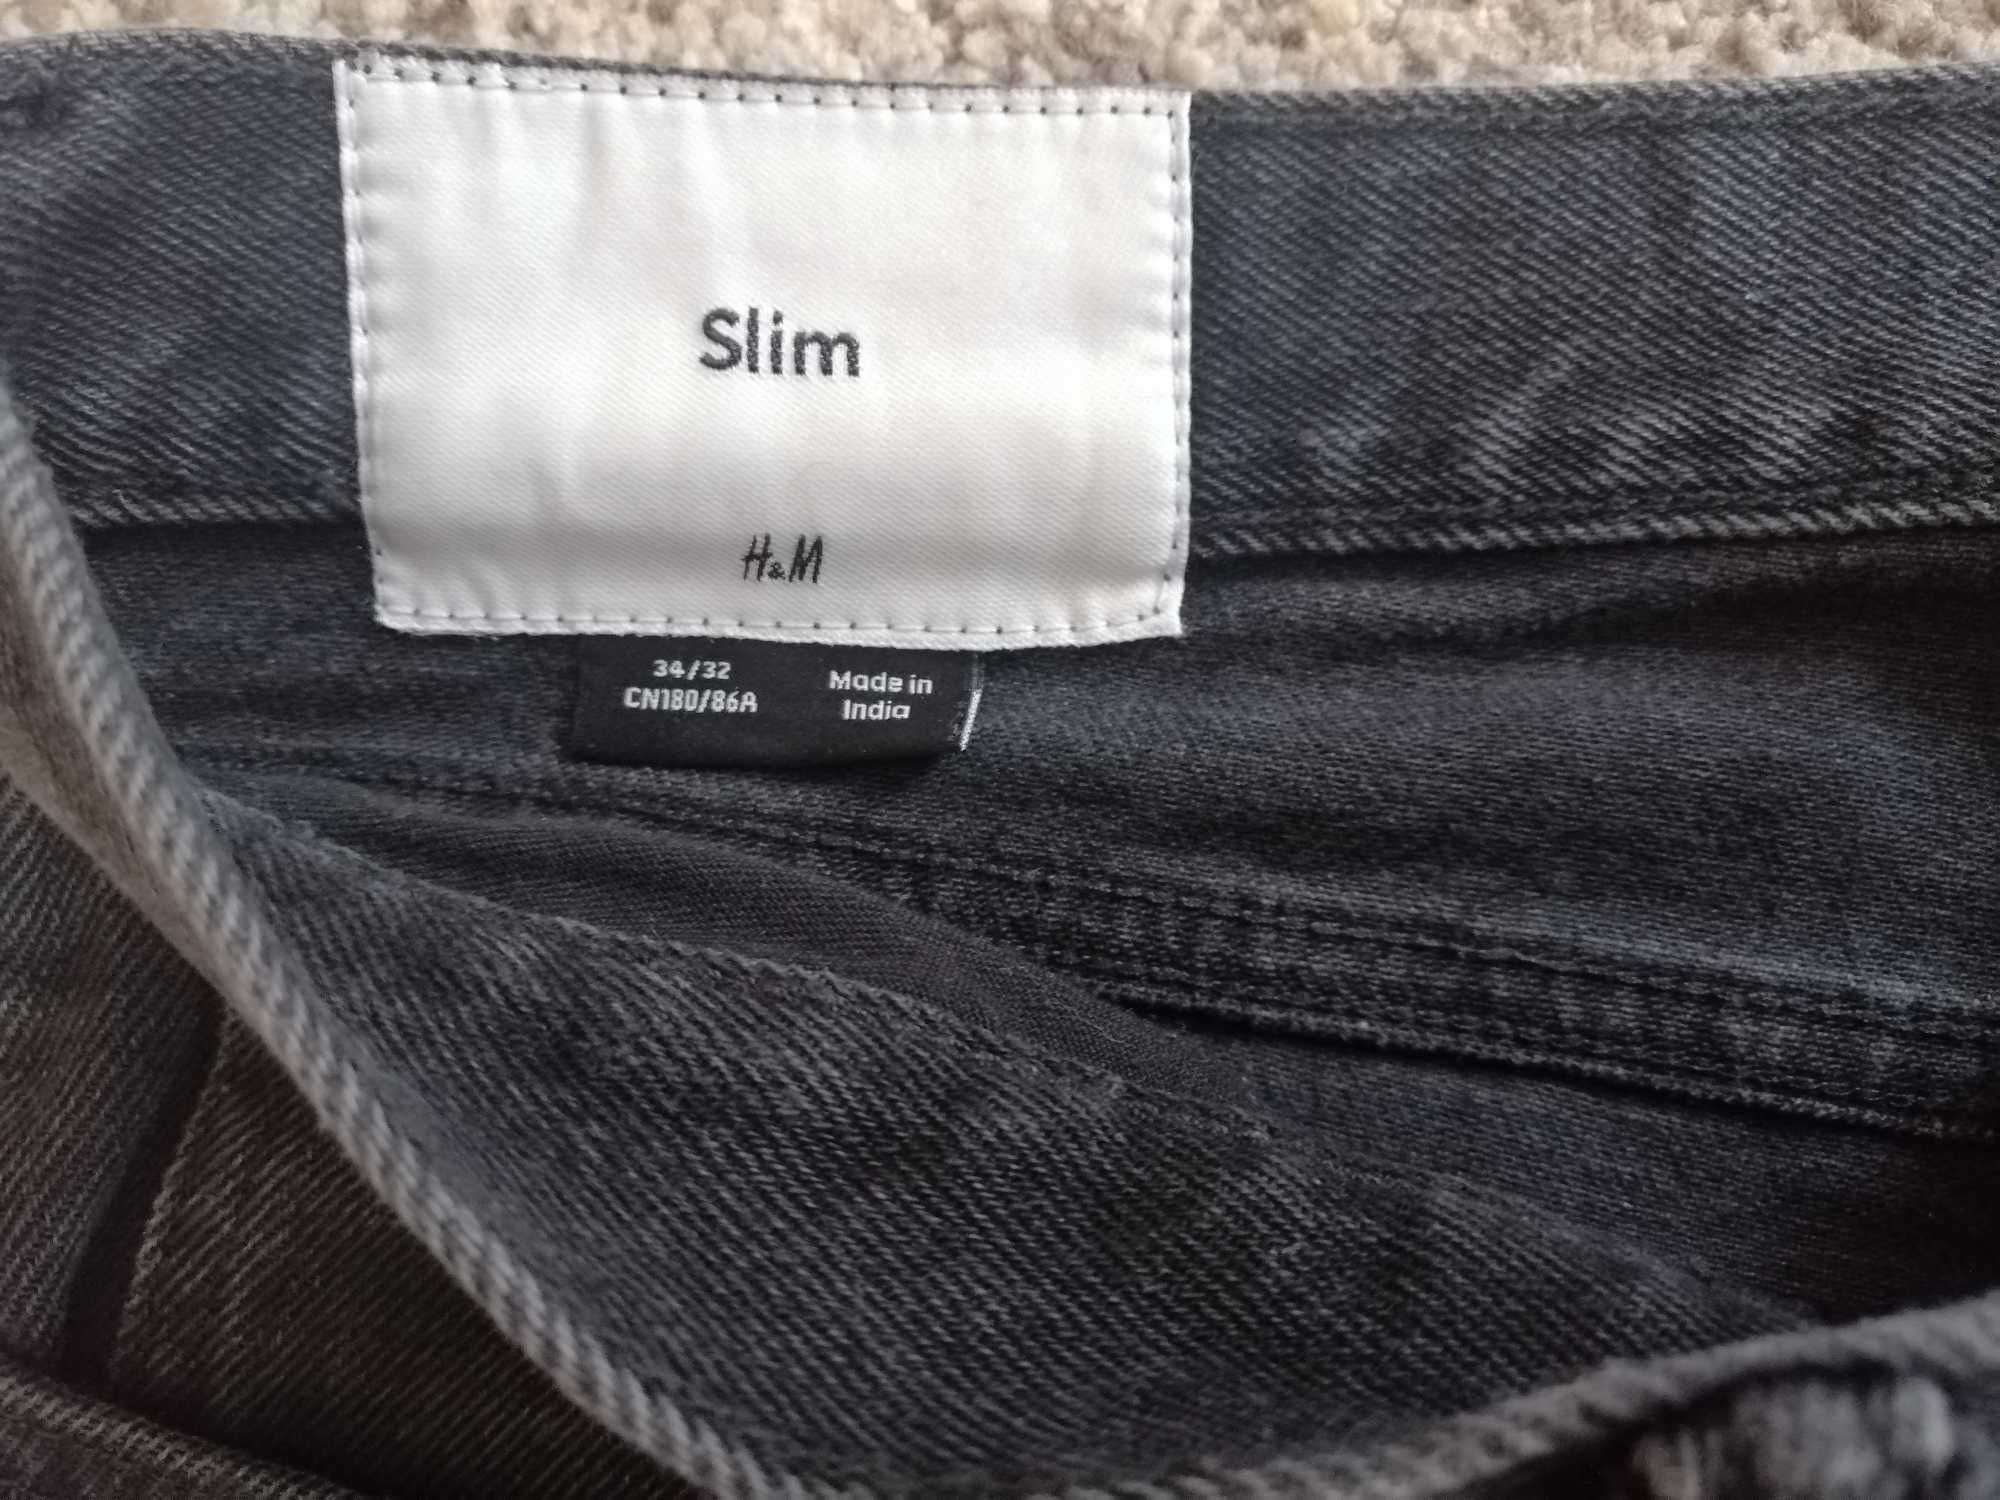 Spodnie męskie jeansy H&M 34/32